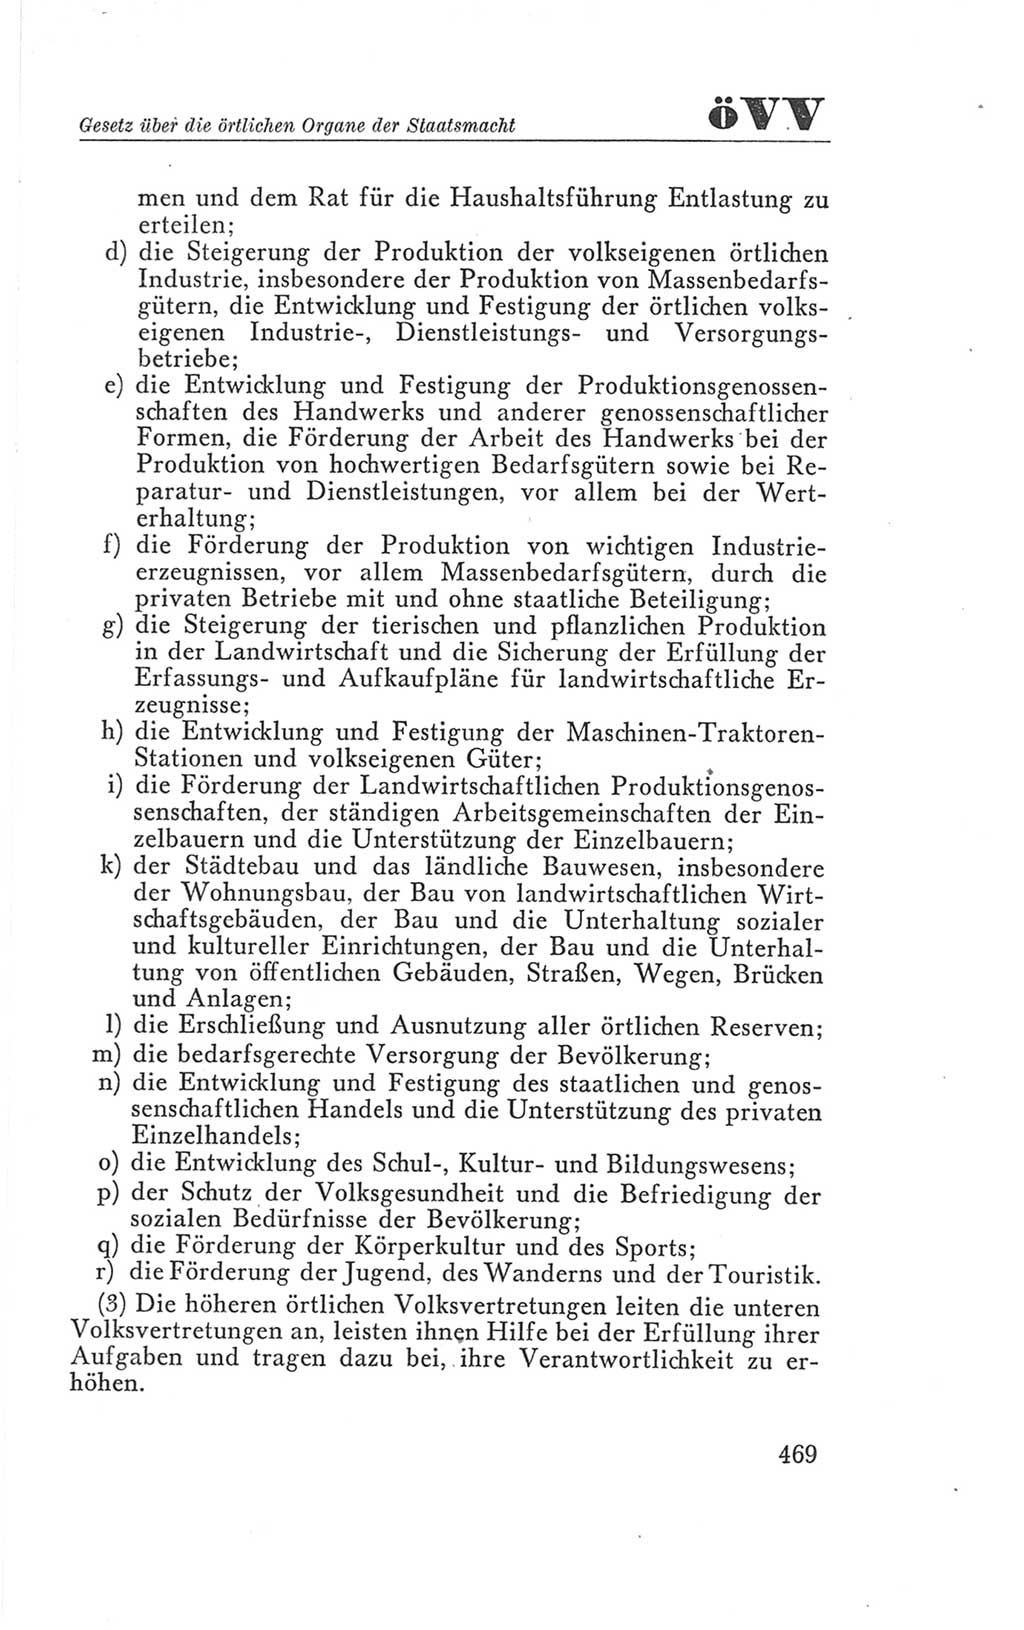 Handbuch der Volkskammer (VK) der Deutschen Demokratischen Republik (DDR), 3. Wahlperiode 1958-1963, Seite 469 (Hdb. VK. DDR 3. WP. 1958-1963, S. 469)